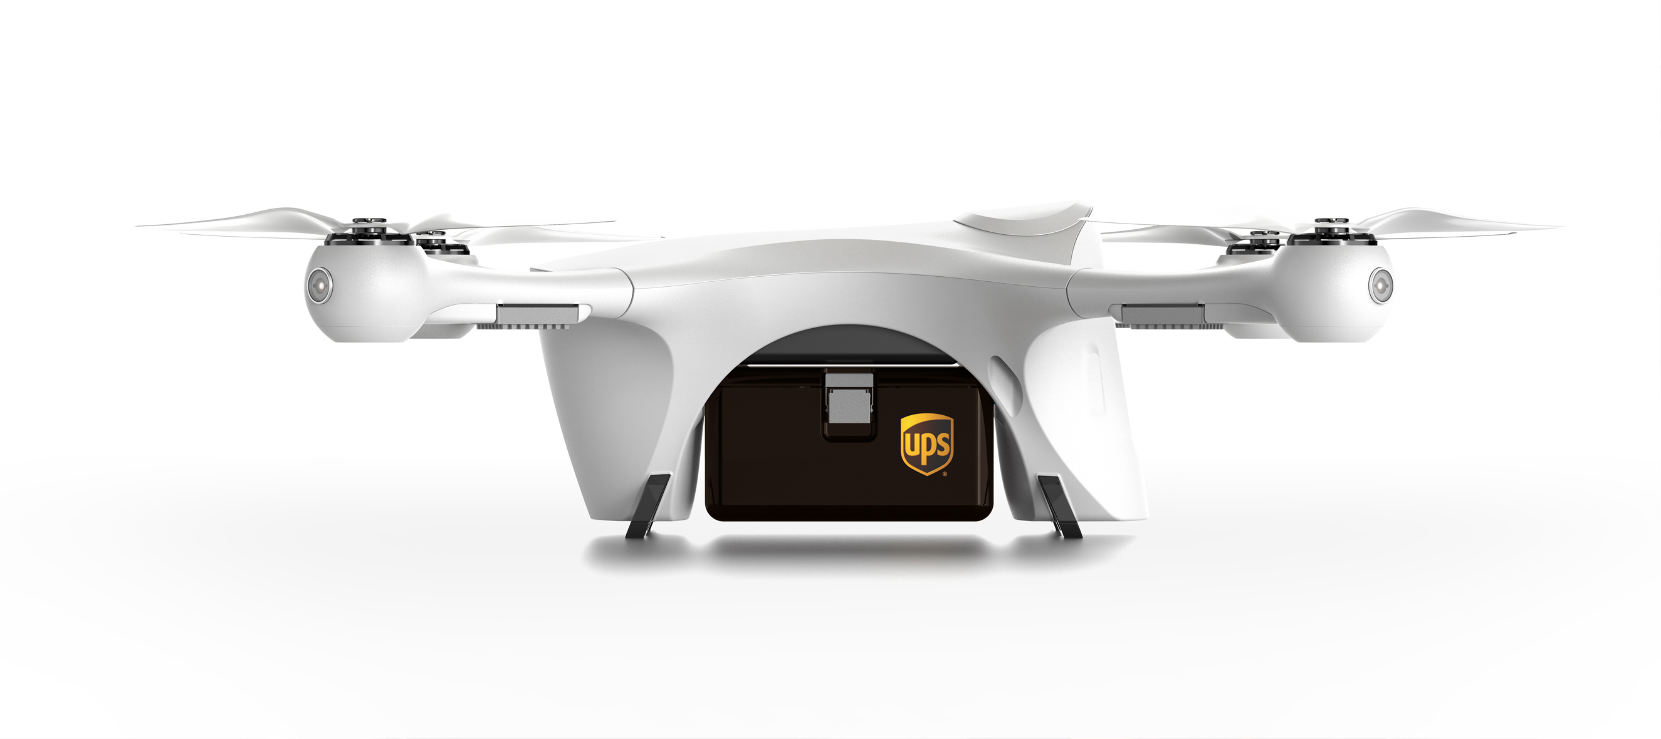 UPS conduit un programme de livraison par drones aux Etats-Unis